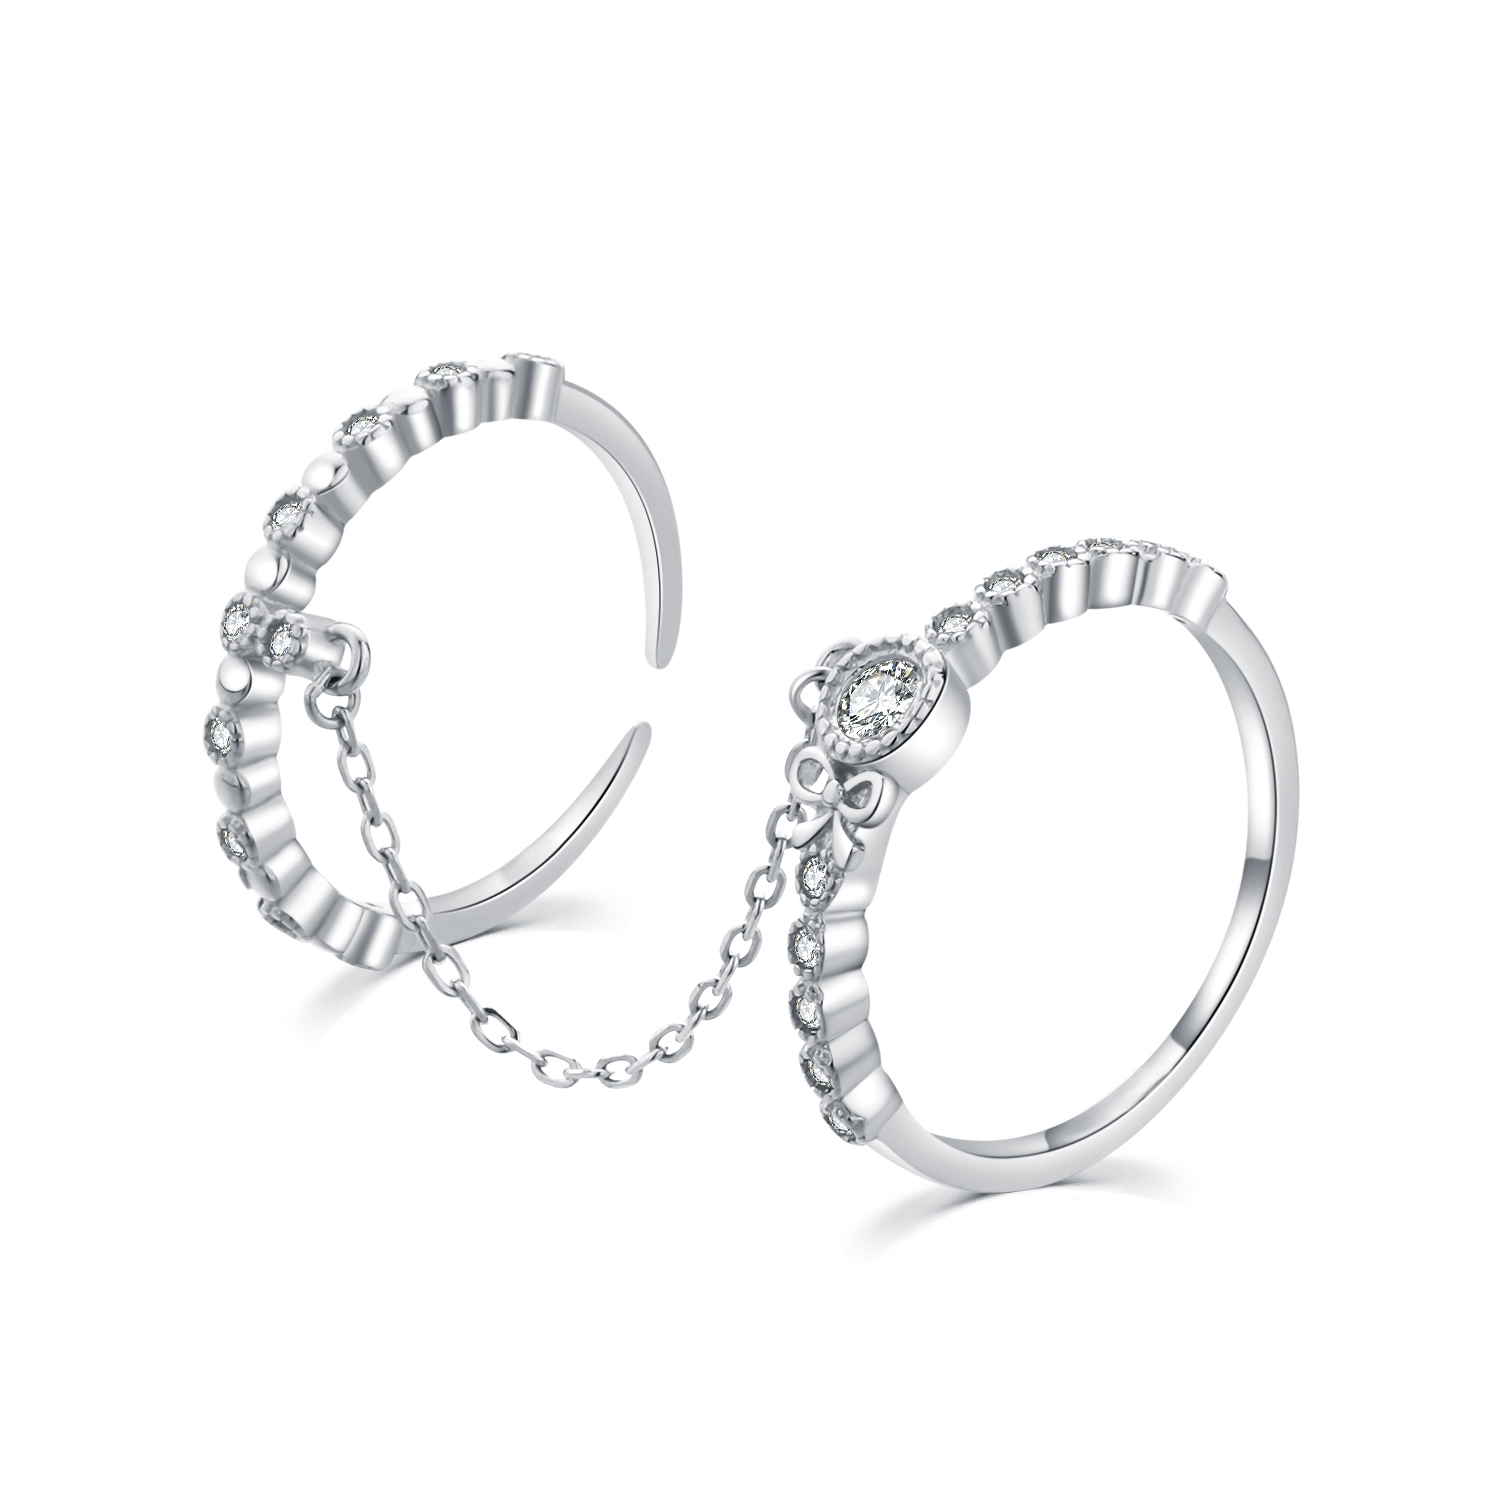 MOISS Moiss stříbrný prsten propojený řetízkem DUO BEAUTY III. R0002206 Velikost 52 mm R0002207